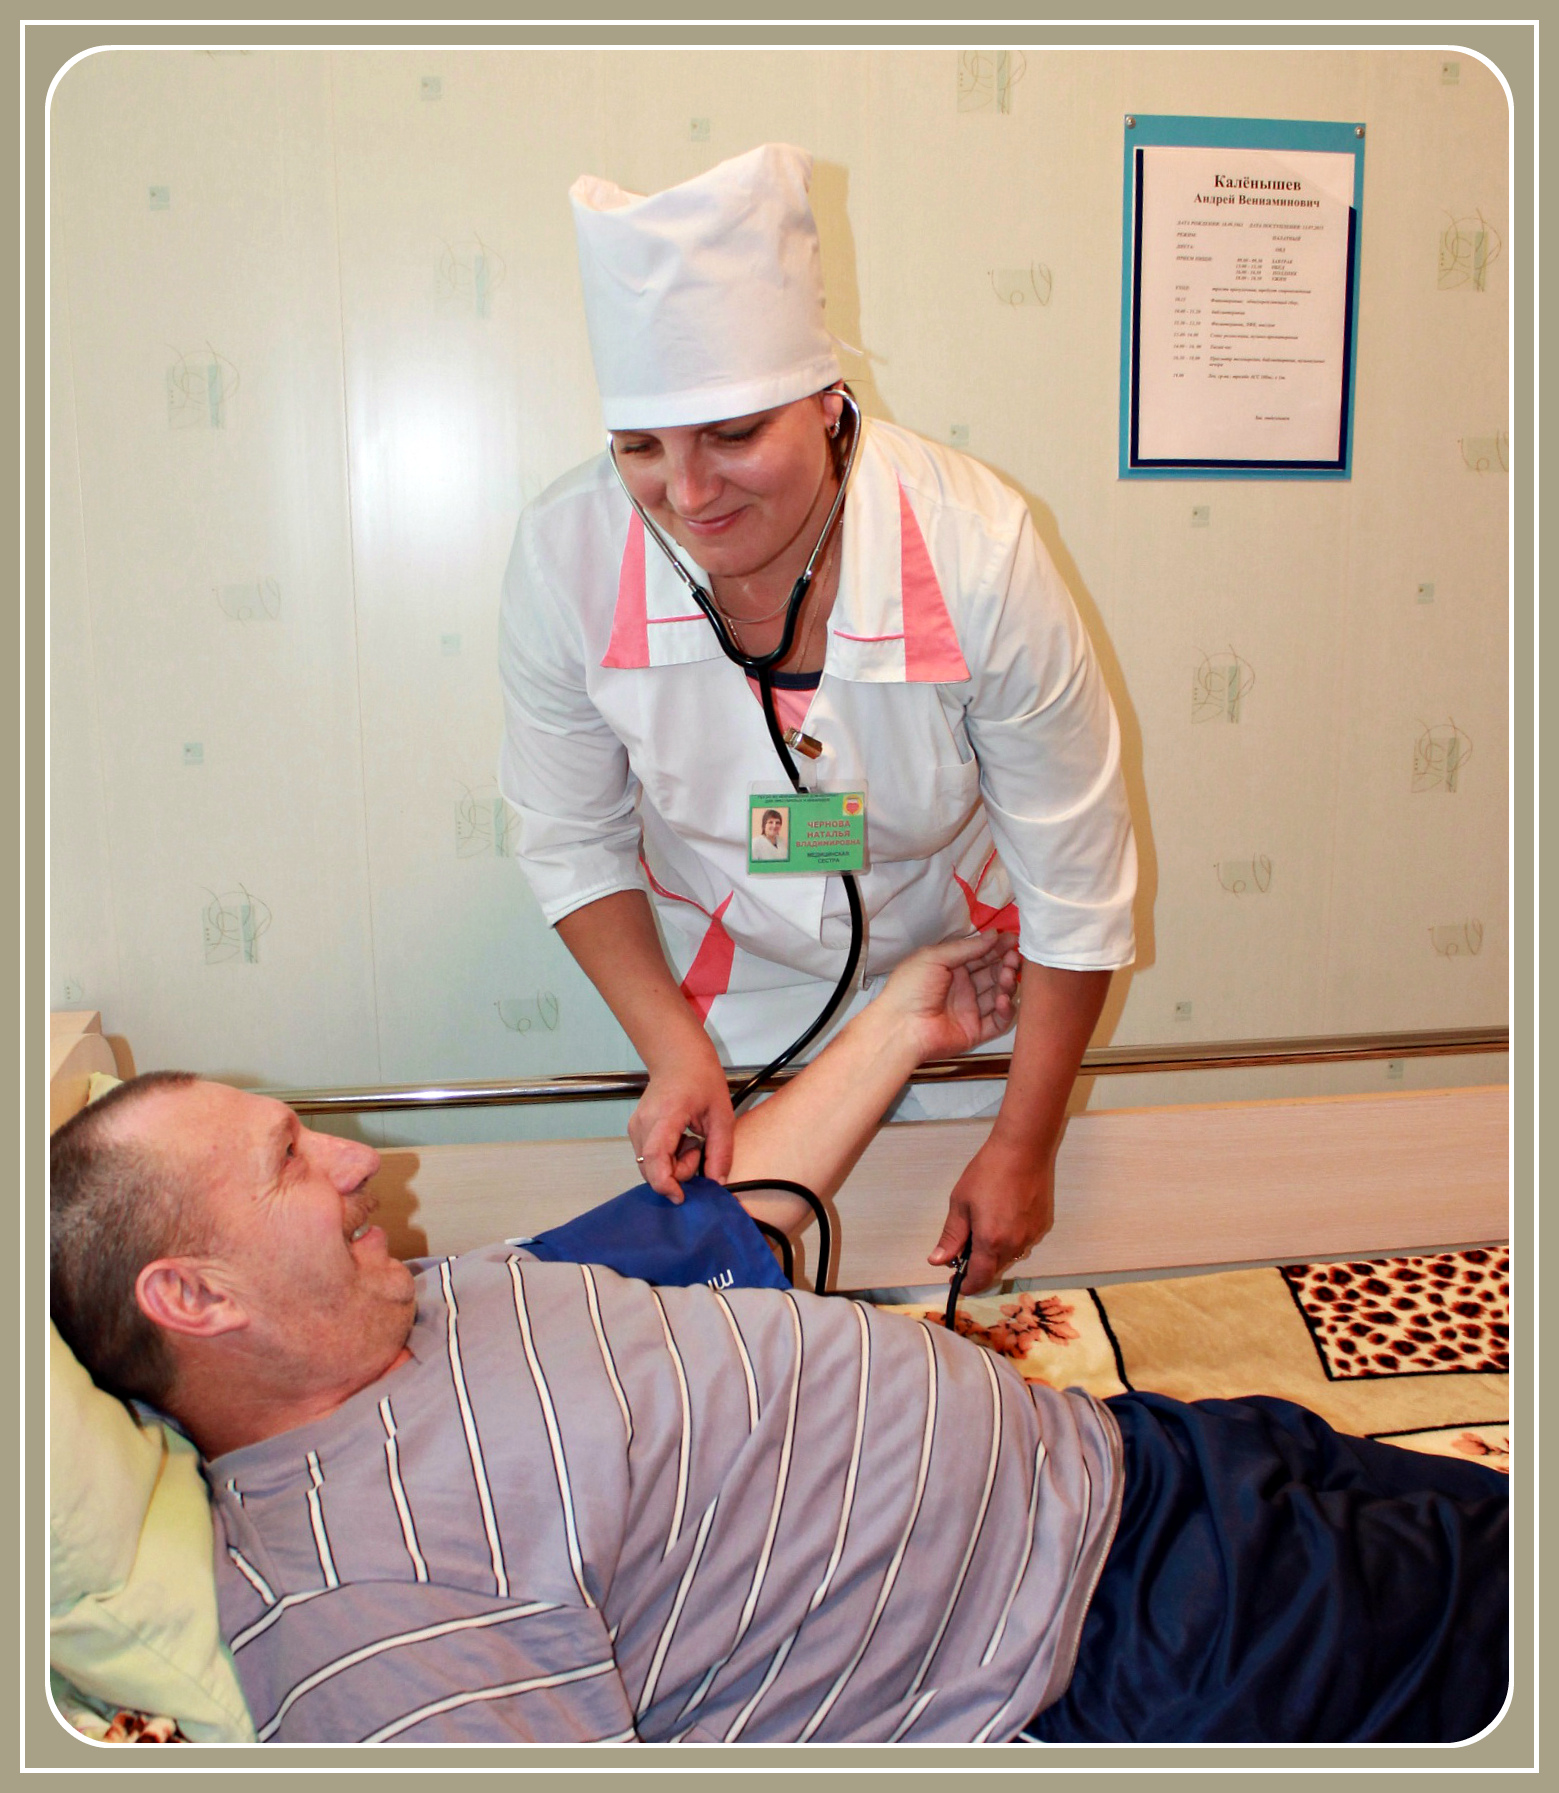 Медсестра палатная измеряет артериальное давление слабоходящему получателю социальных услуг непосредственно в комнате.